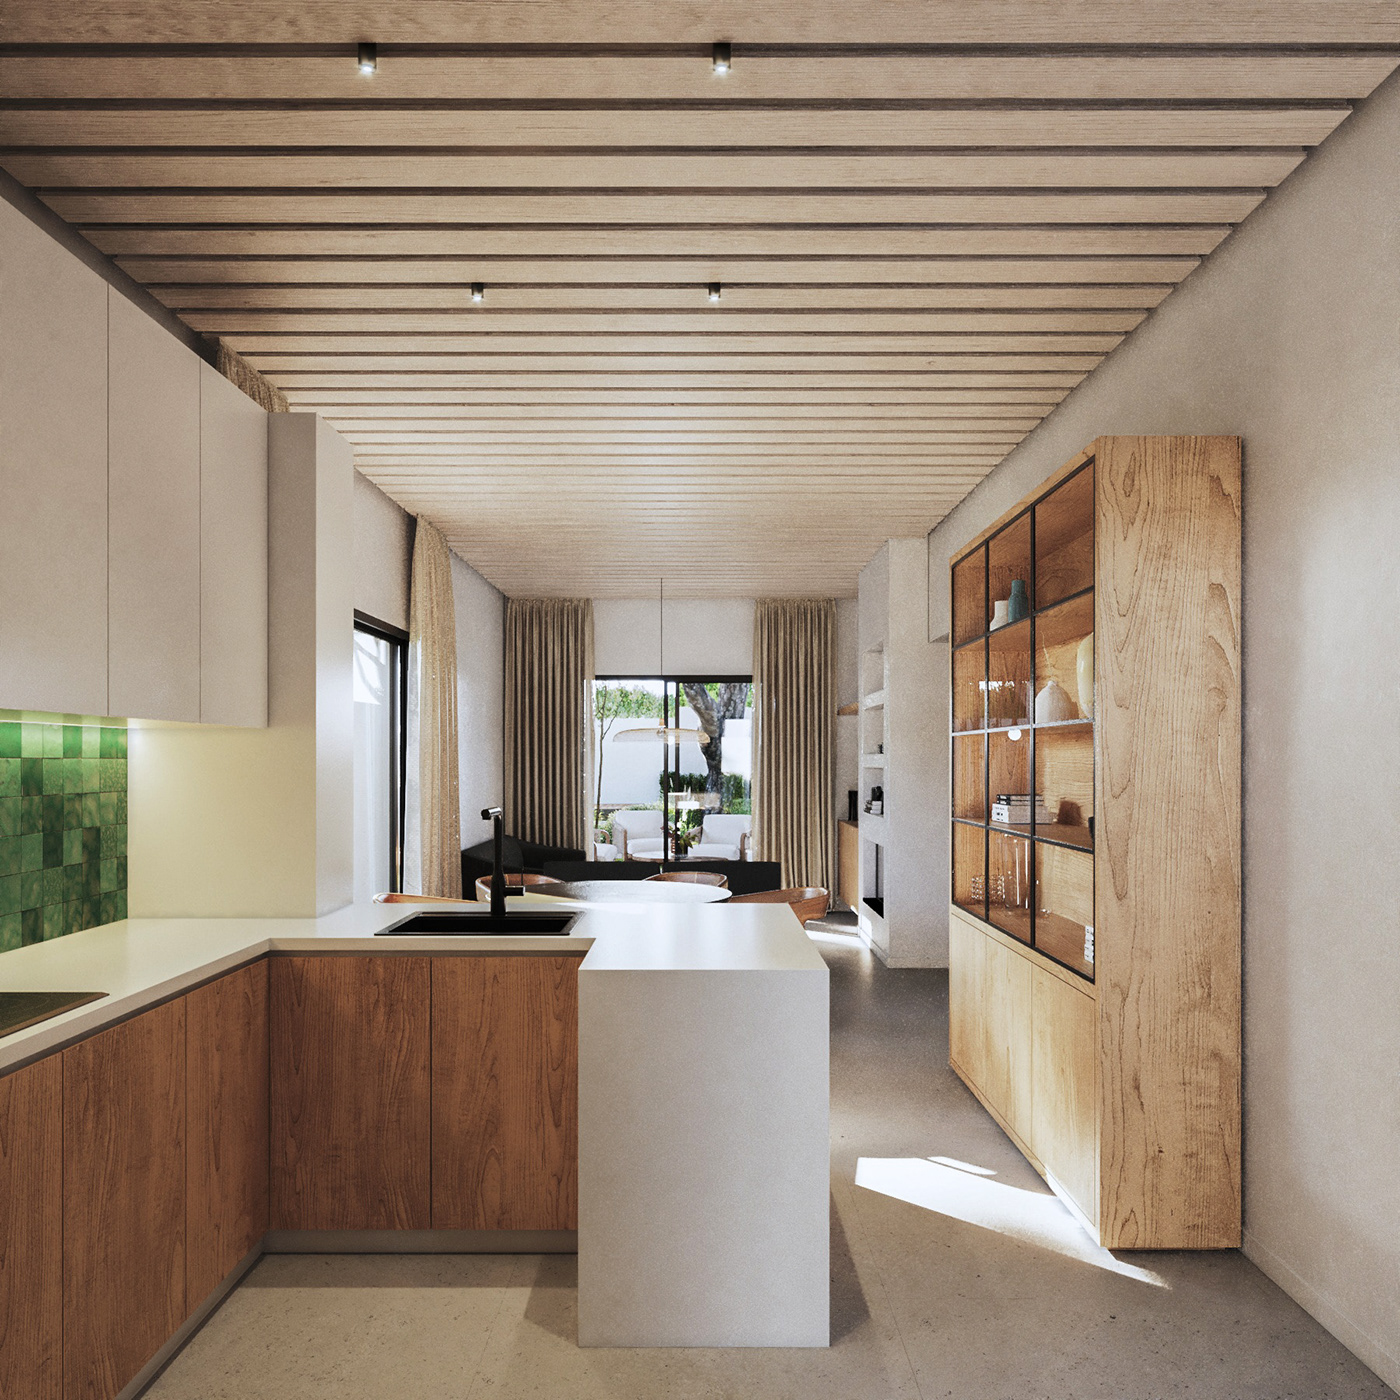 furniture interior design  3ds max vray visualization 3D archviz exterior kitchen reform